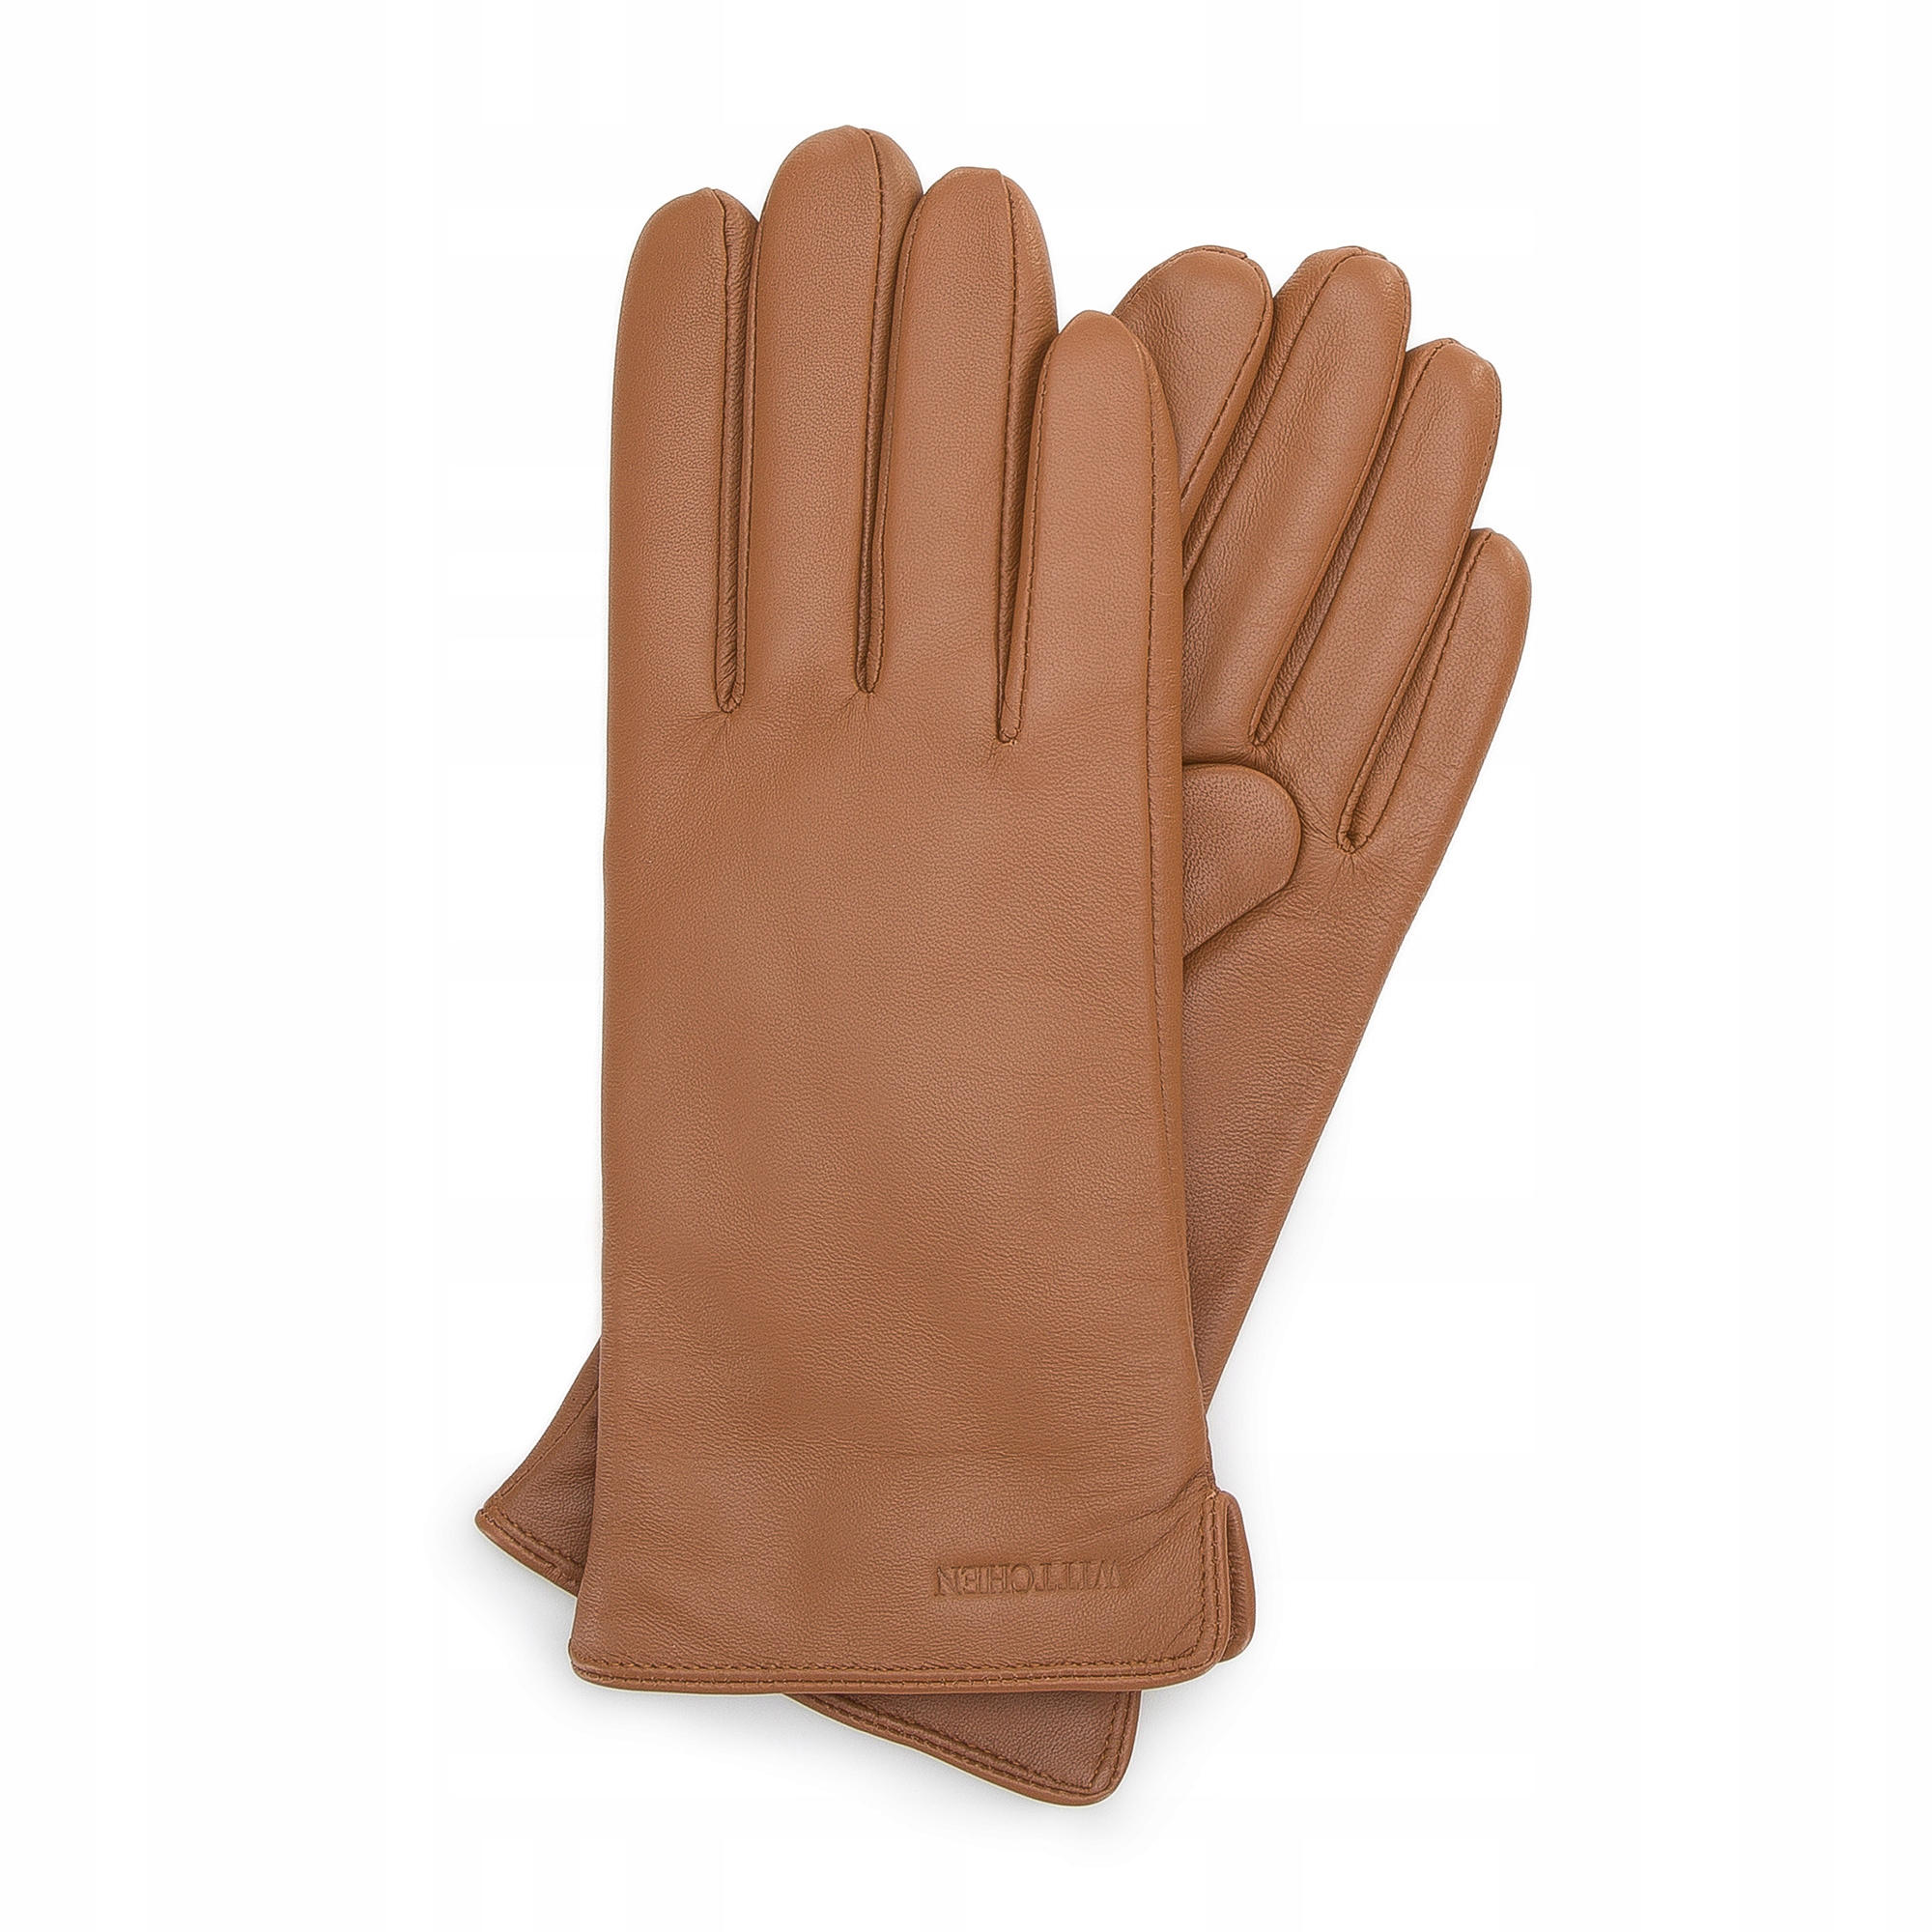 WITTCHEN damskie rękawiczki skórzane brązowe 11887932020 - Allegro.pl